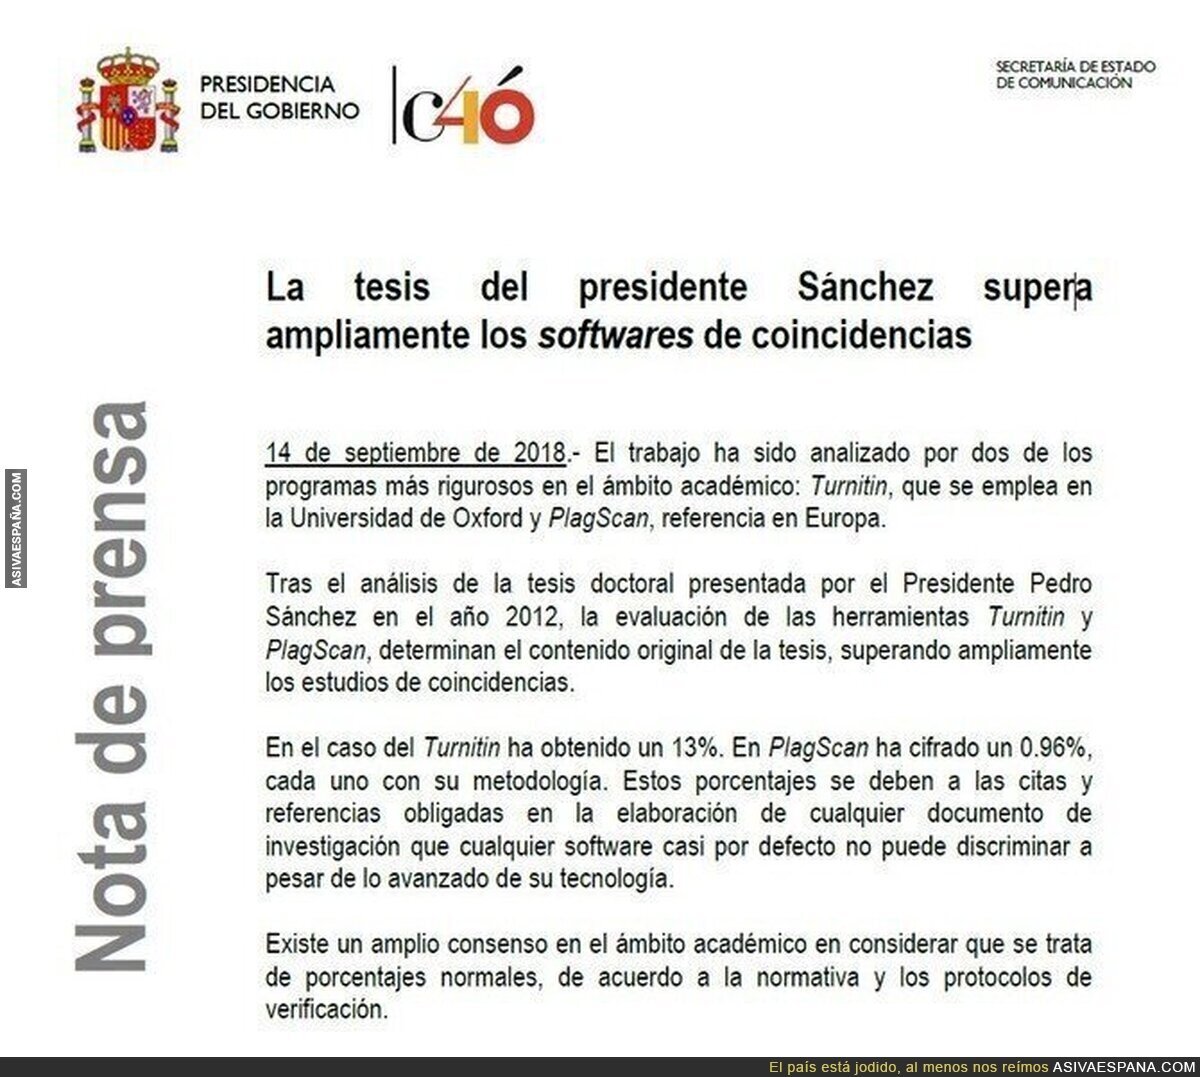 La tesis de Pedro Sánchez ha sido comprobada con dos software antiplagio